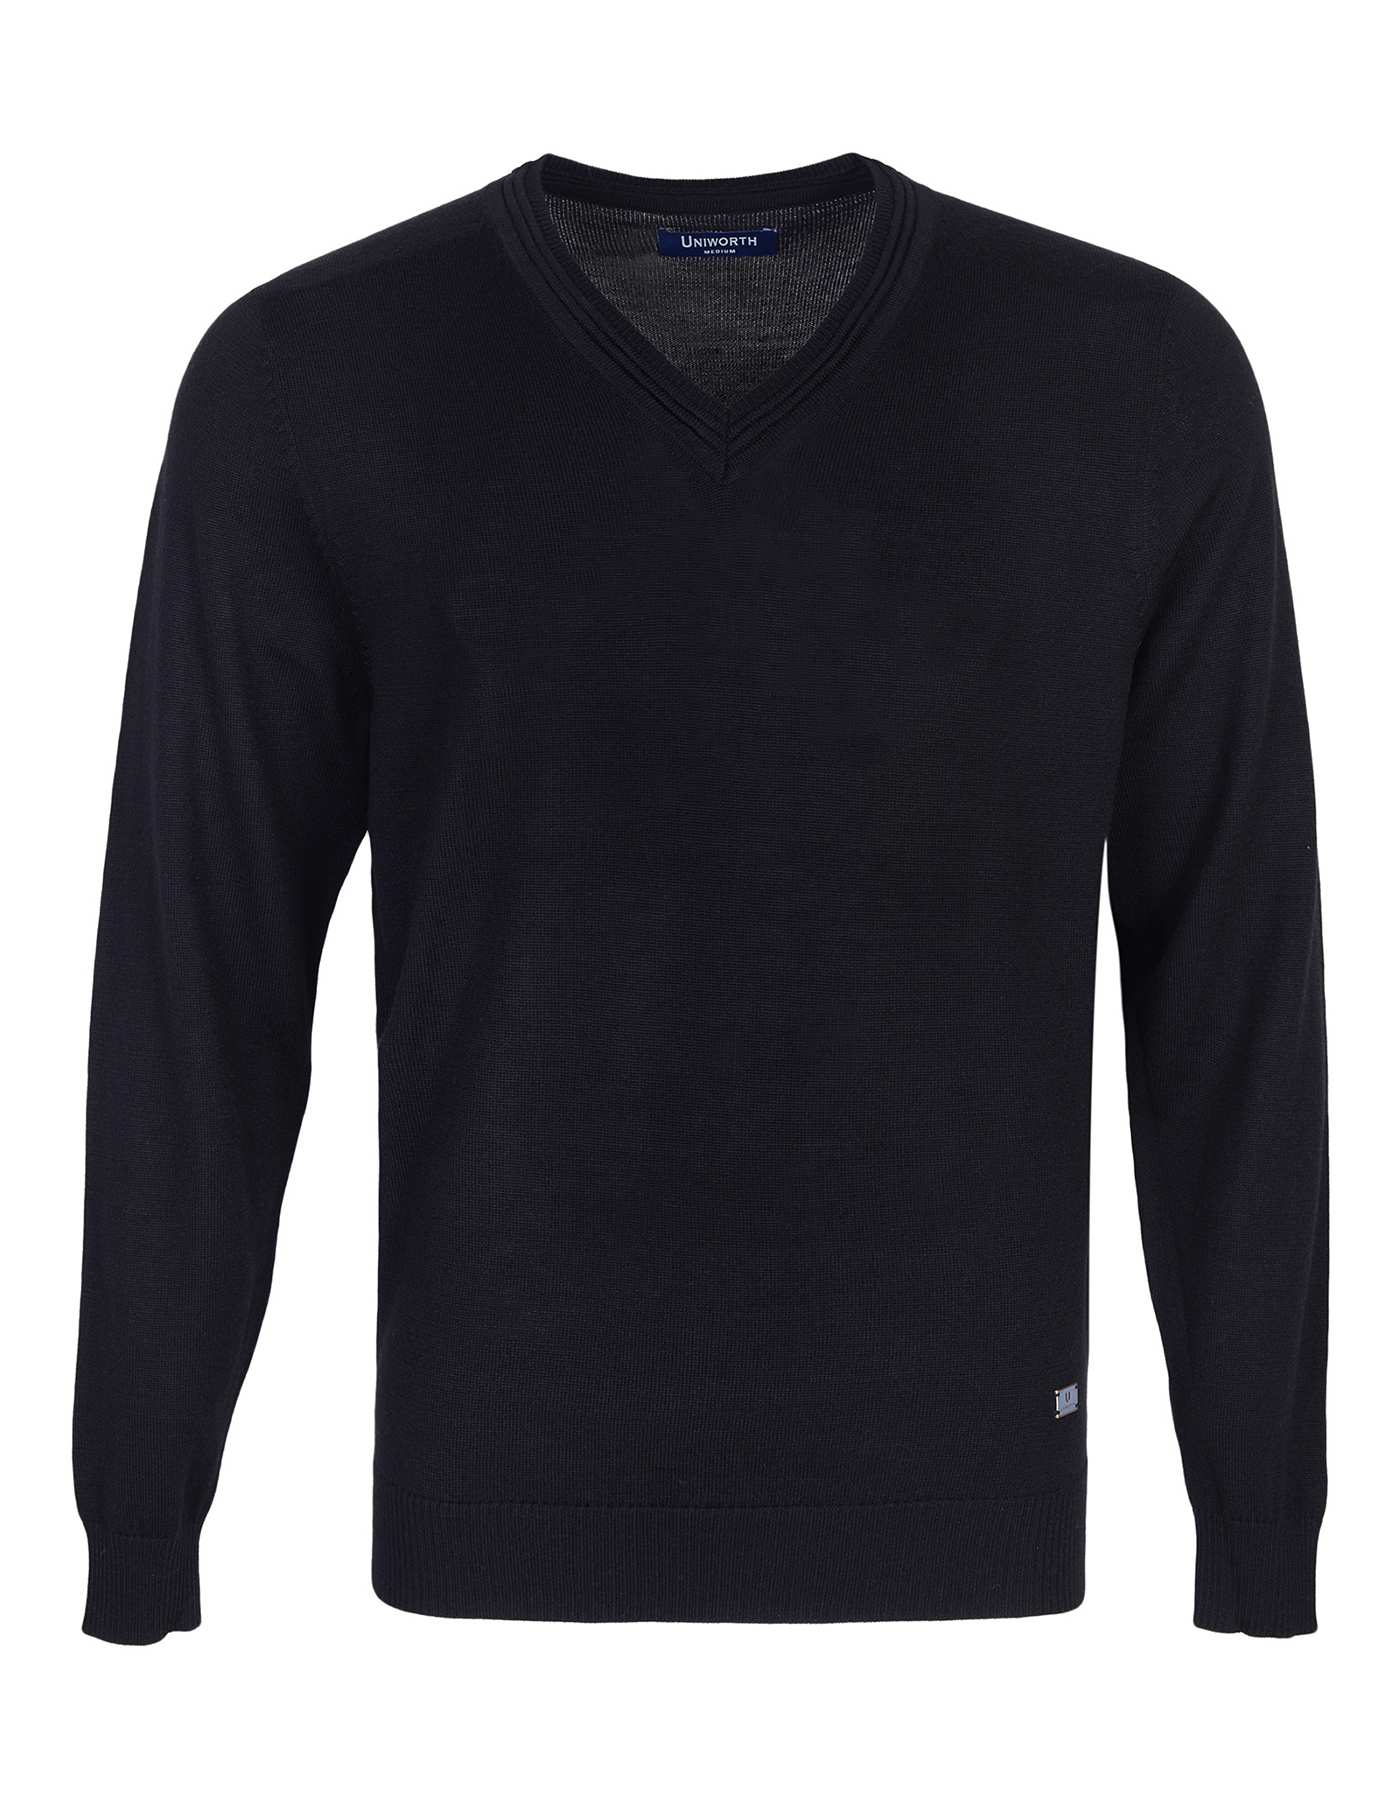 Black Plain Full Sleeve Sweater